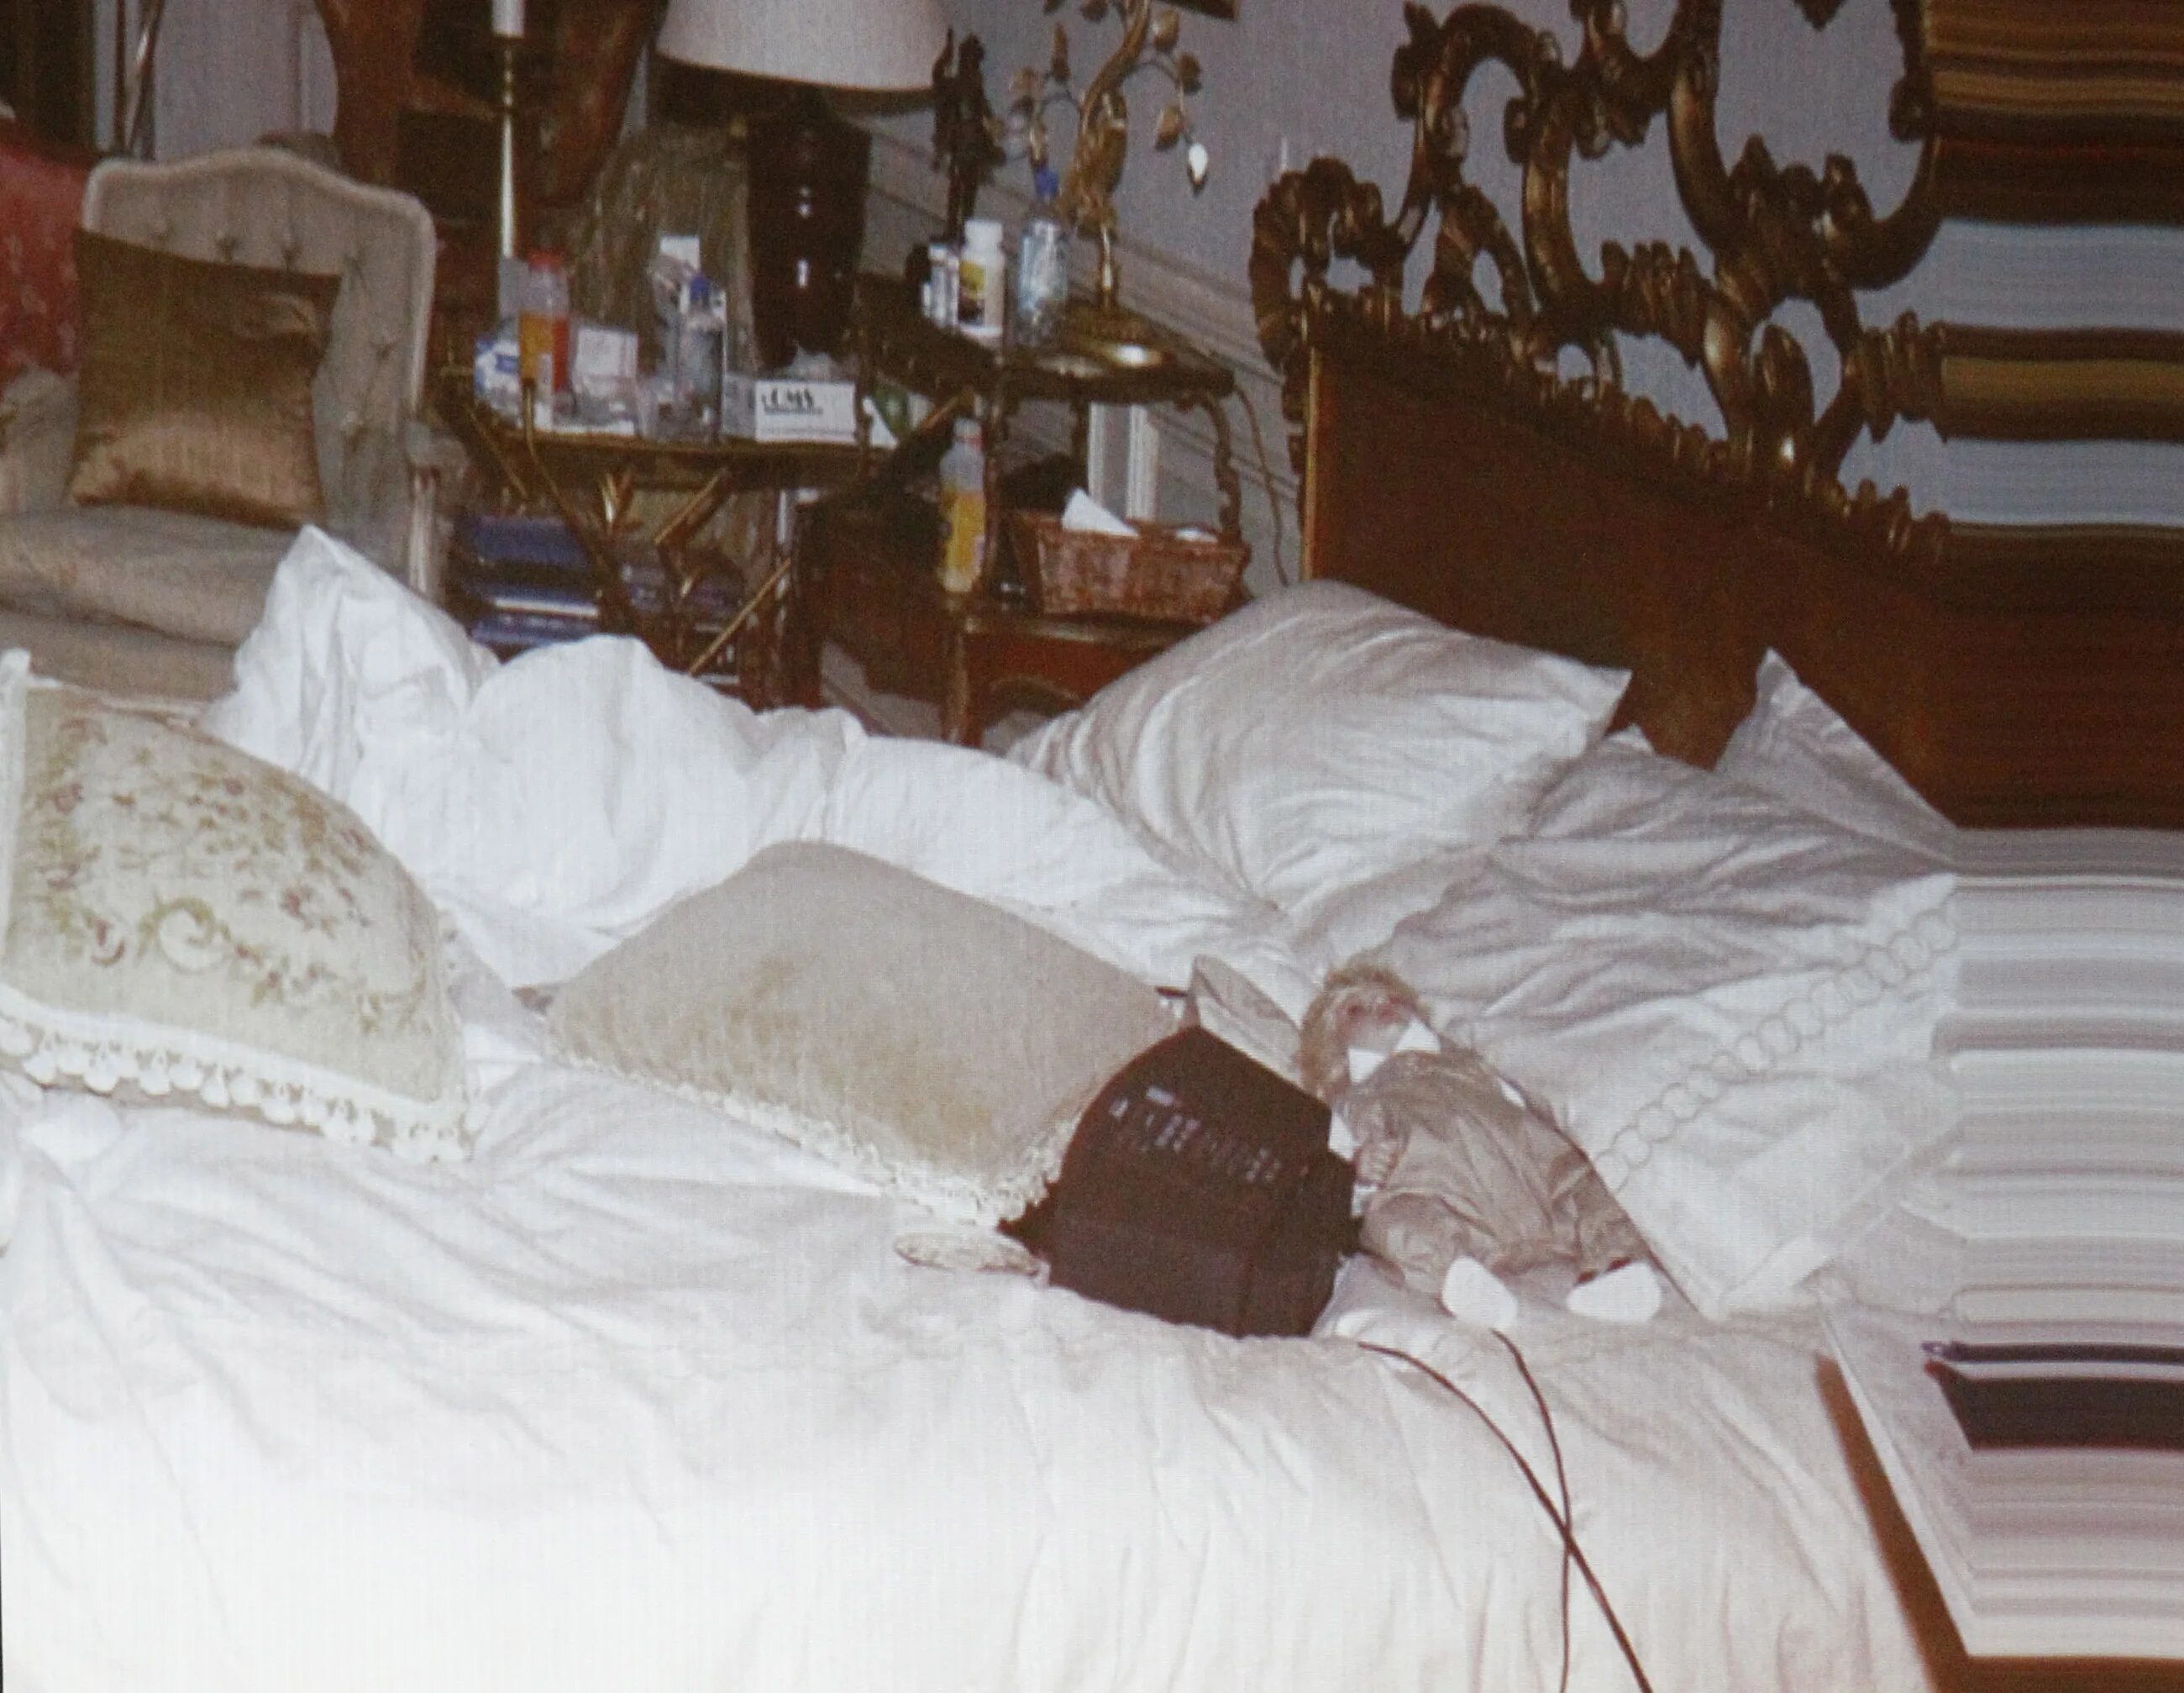 Квартира где умер человек. Спальня Майкла Джексона в 2009 году. Посмертный снимок Майкла Джексона.